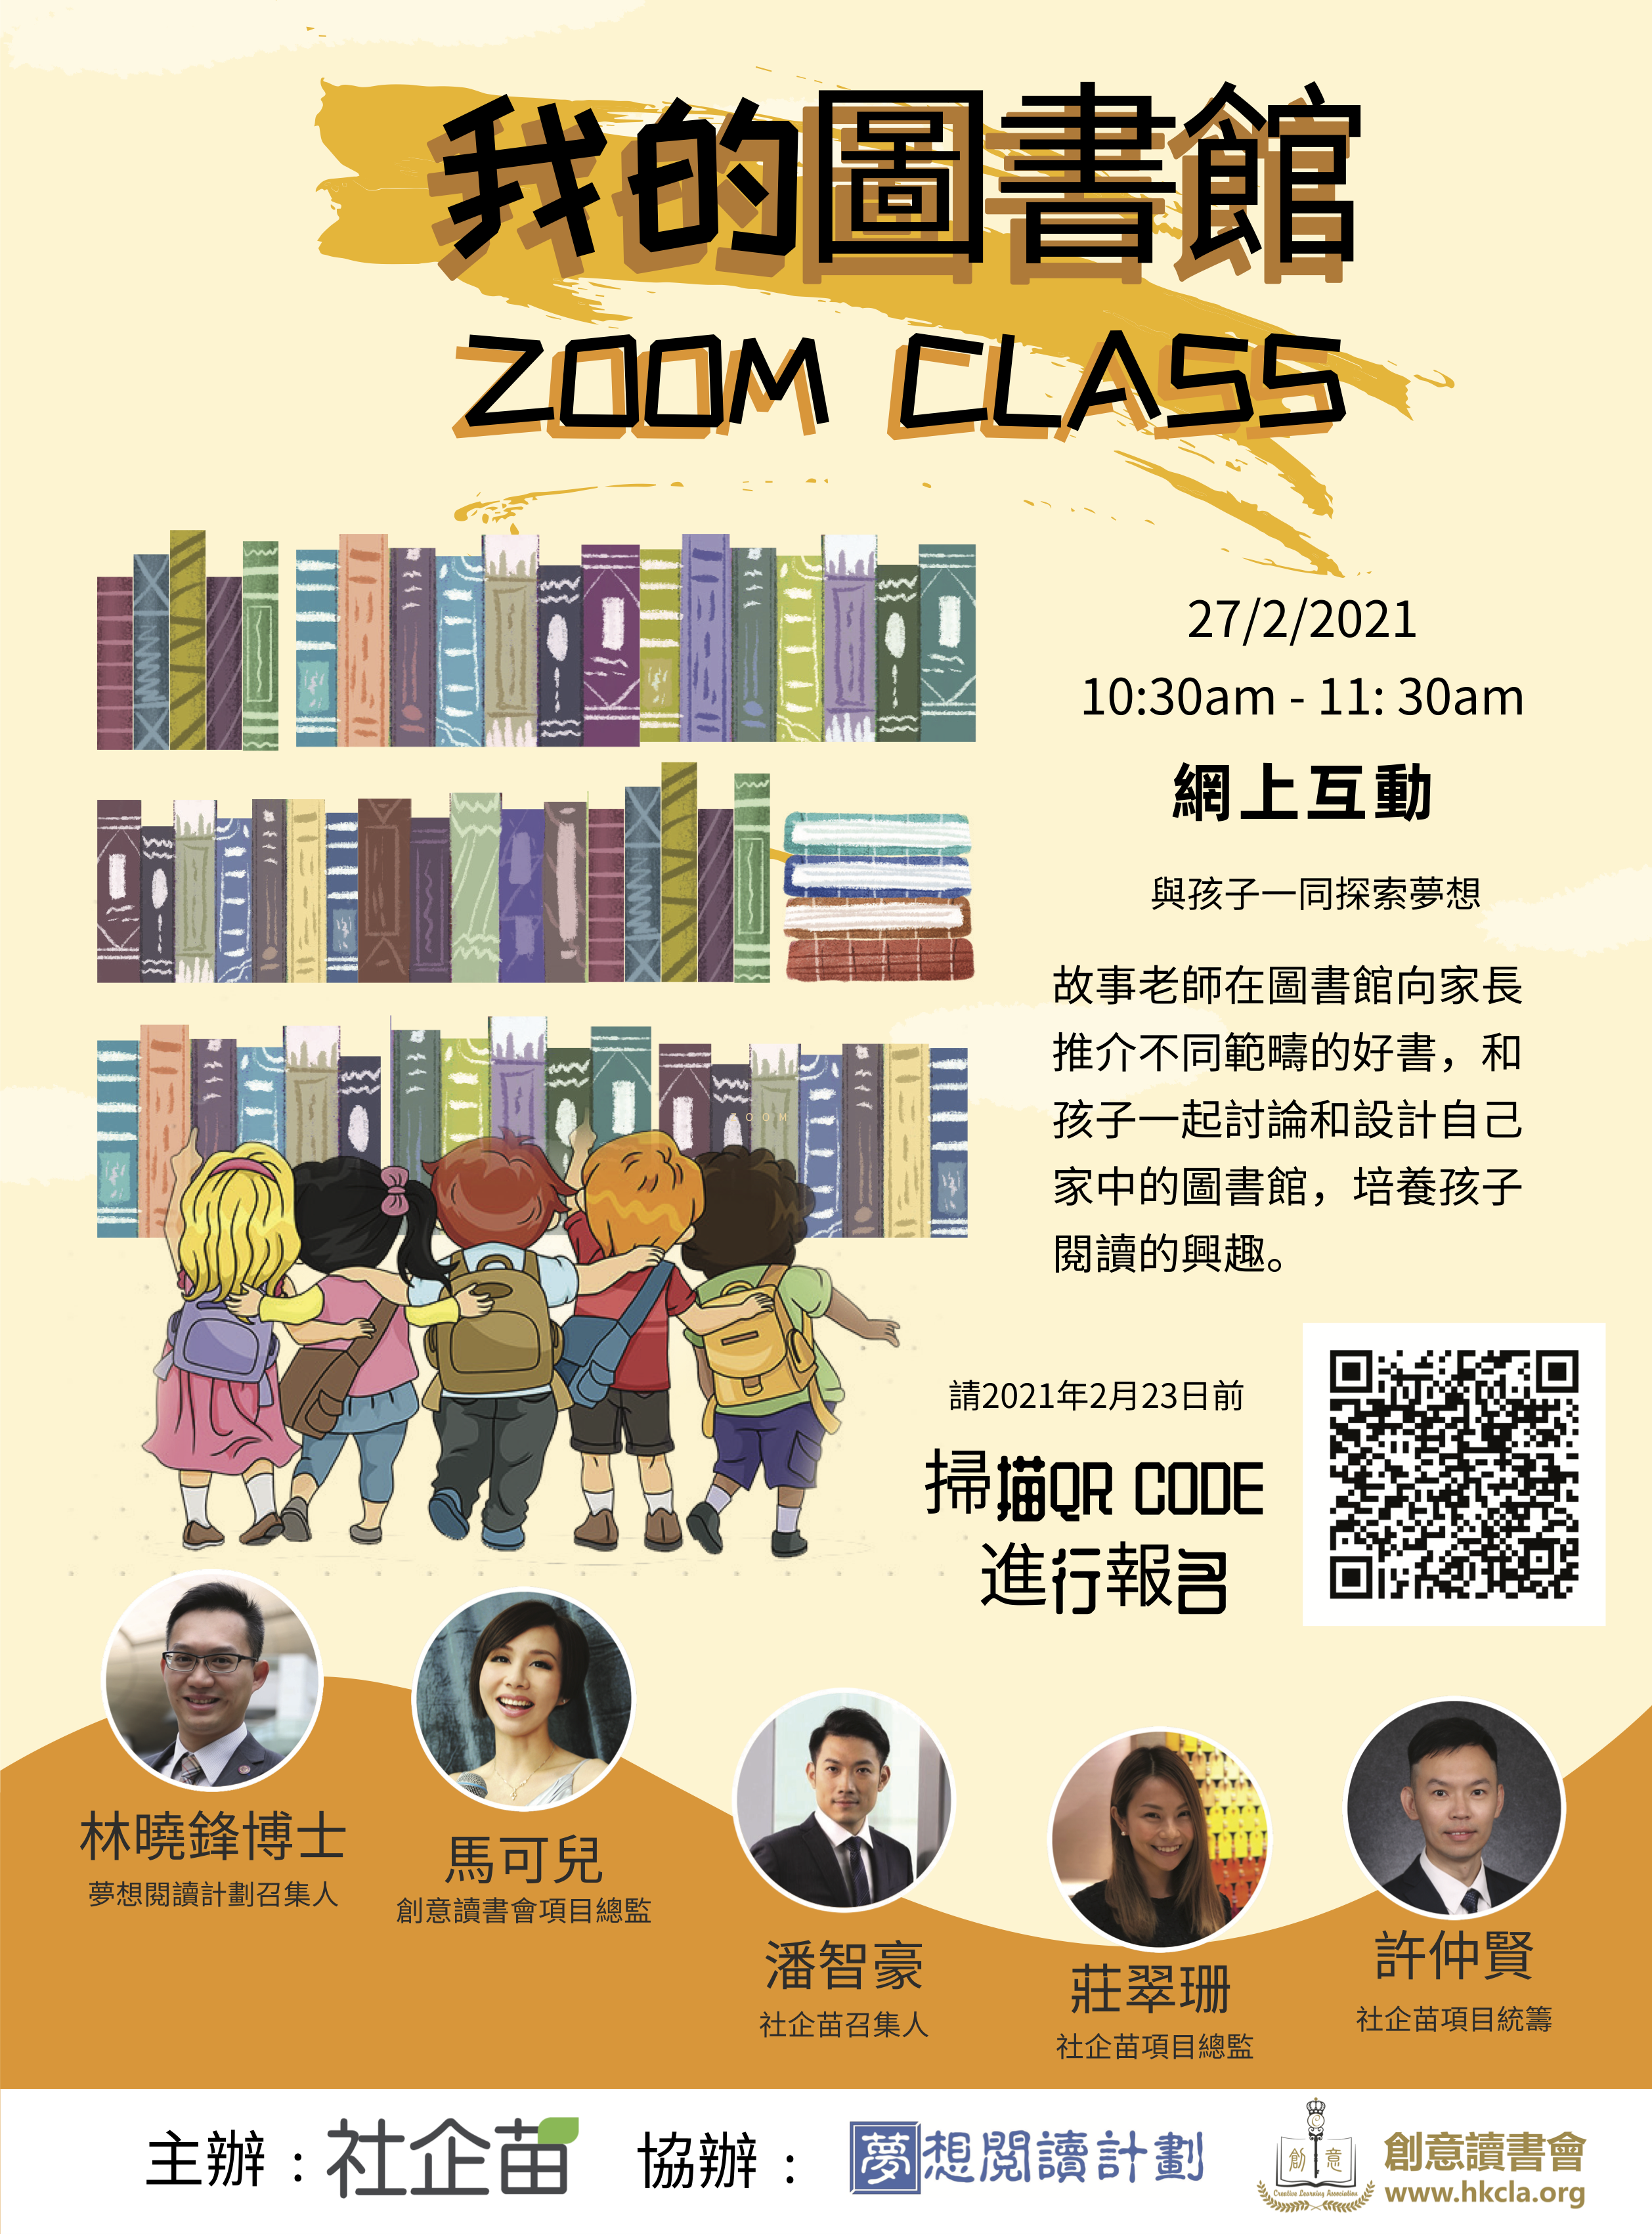 2020-2021年度閱讀延伸活動─「我的圖書館」Zoom Class